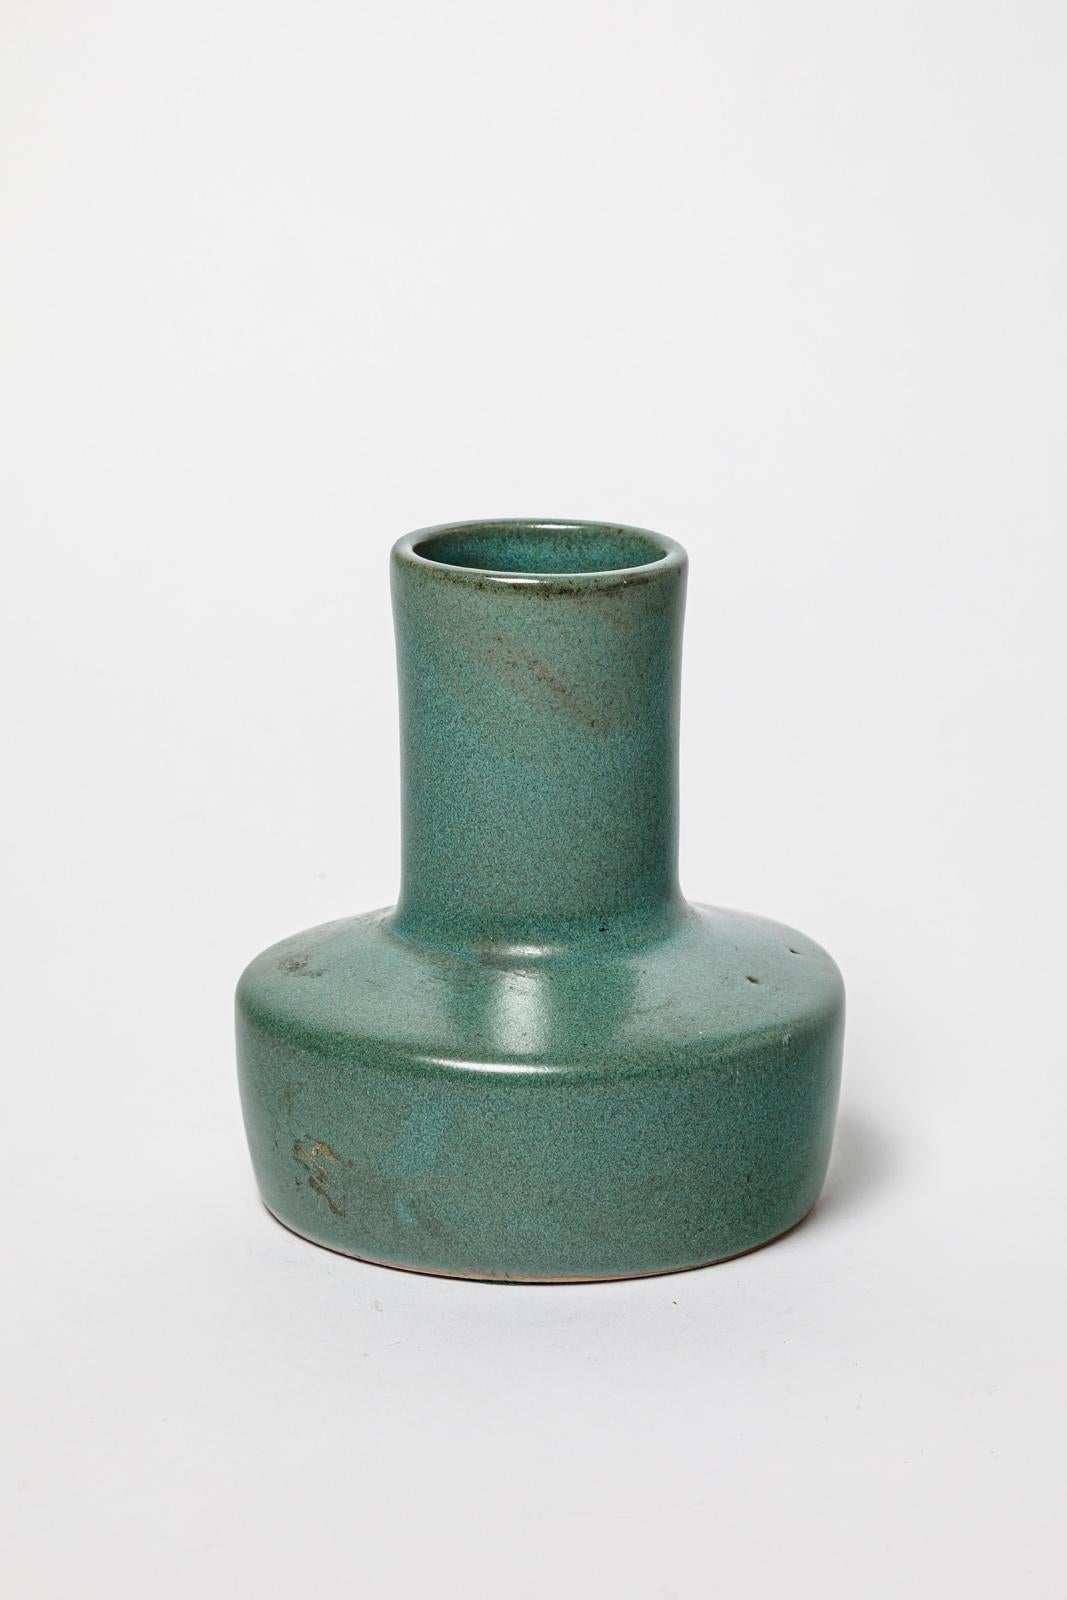 Tim Orr

Vase en céramique verte design du 20e siècle

Pièce unique faite à la main

Signé

Condition originale parfaite.

Hauteur 15 cm
Grand 13 cm